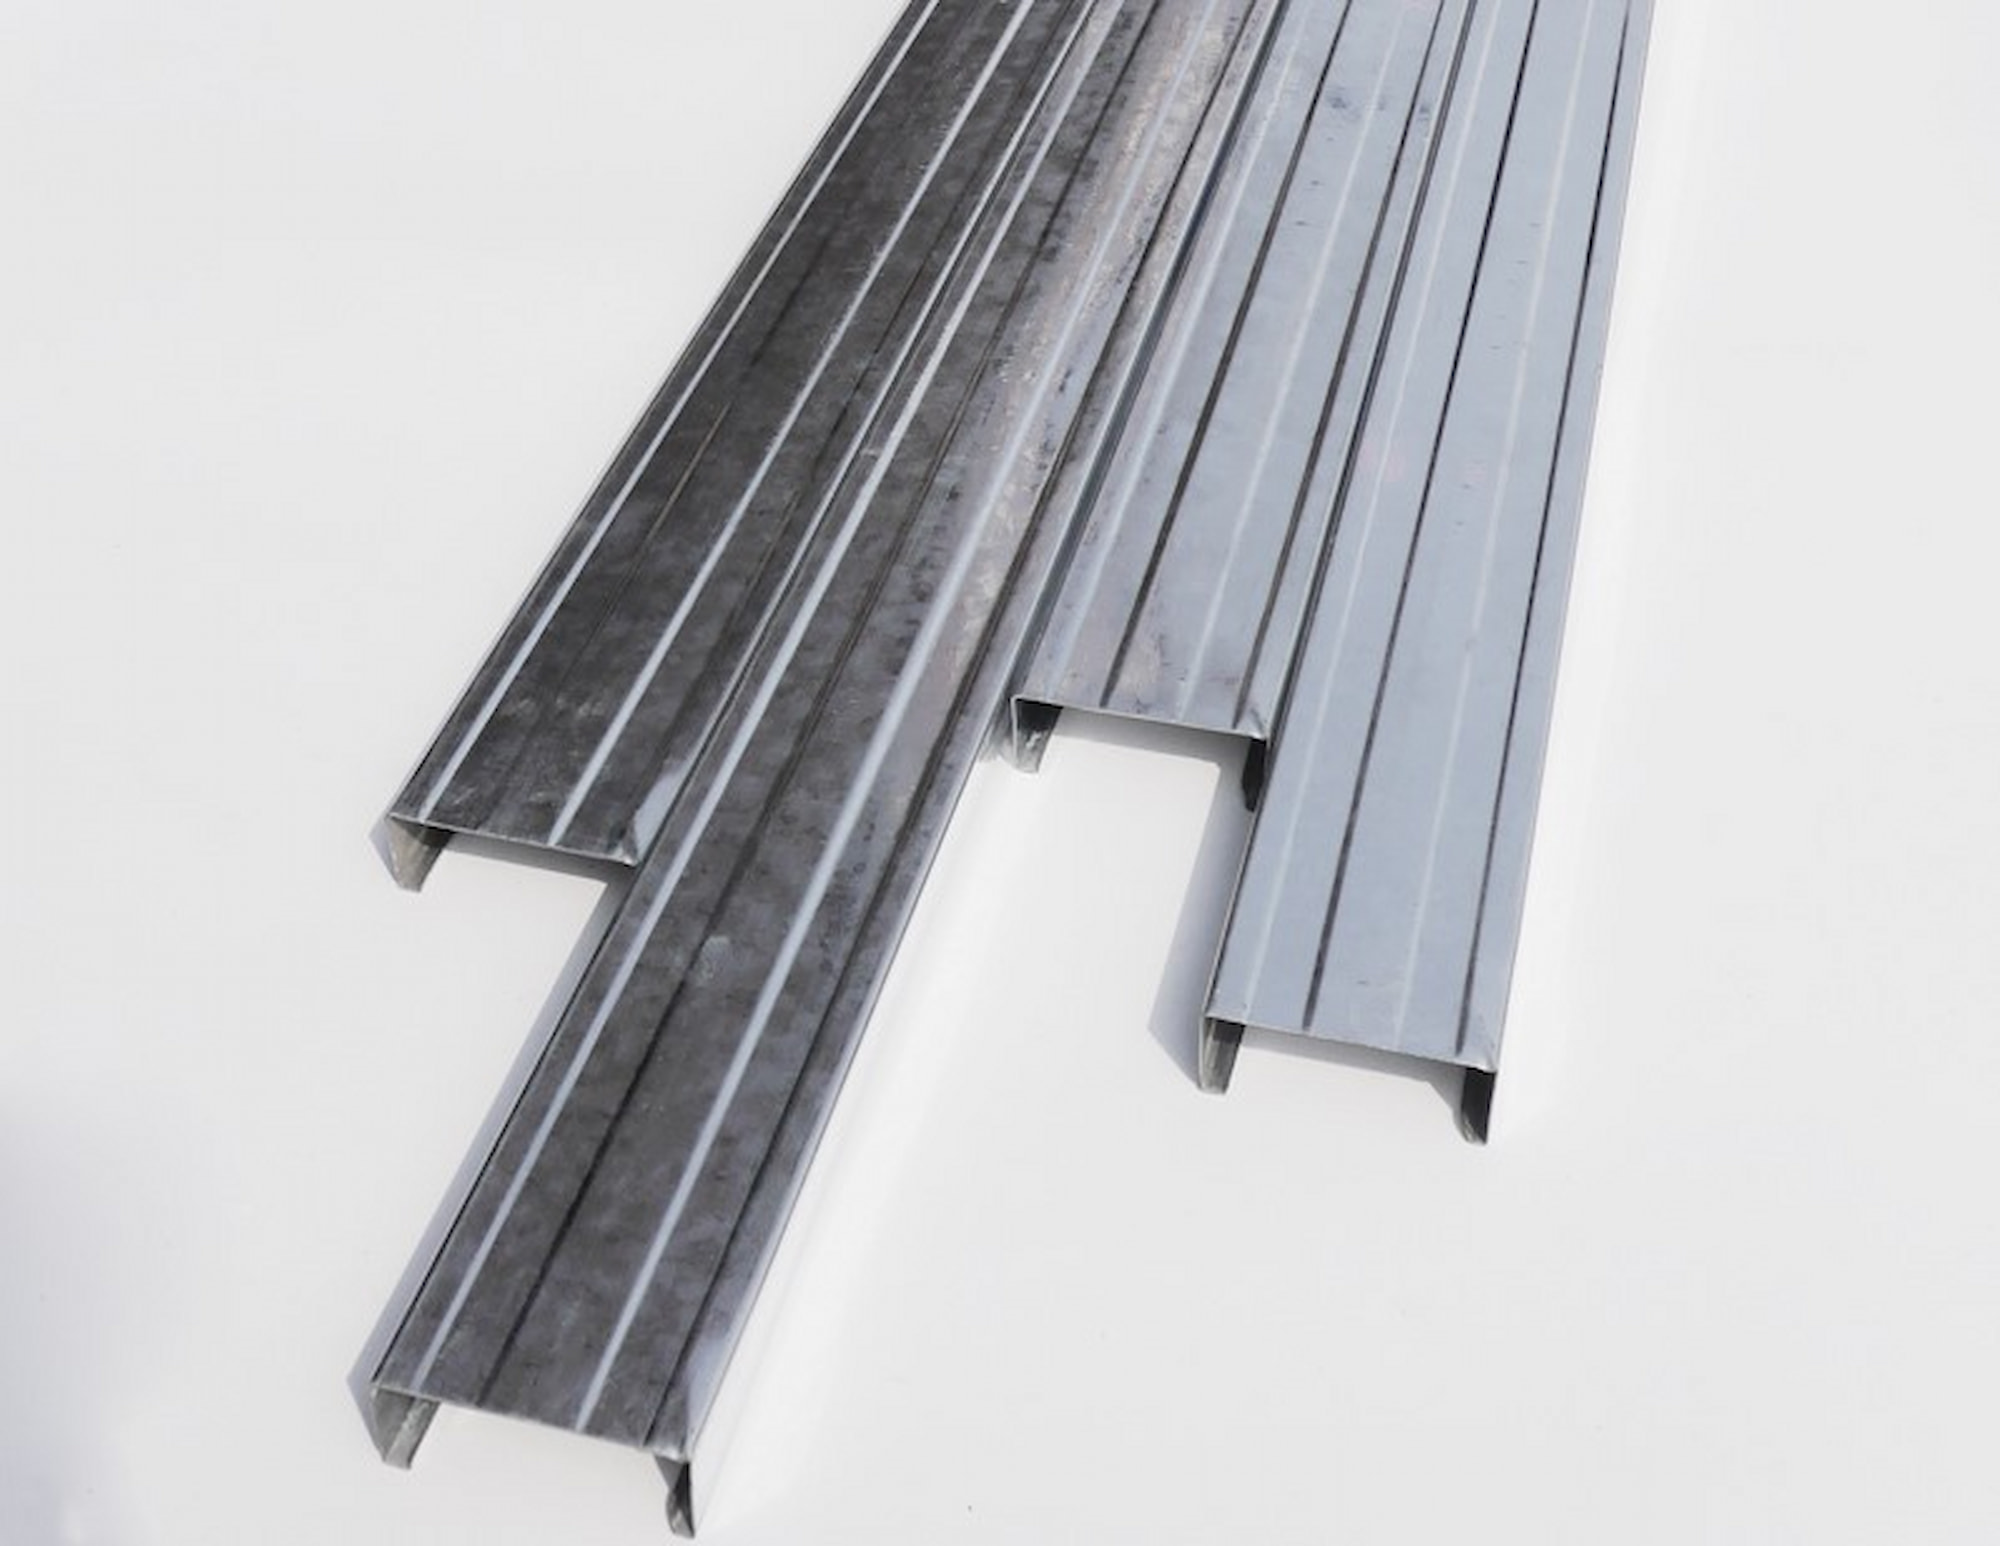 輕鋼架天花板的槽鋼有做熱浸鍍鋅處理